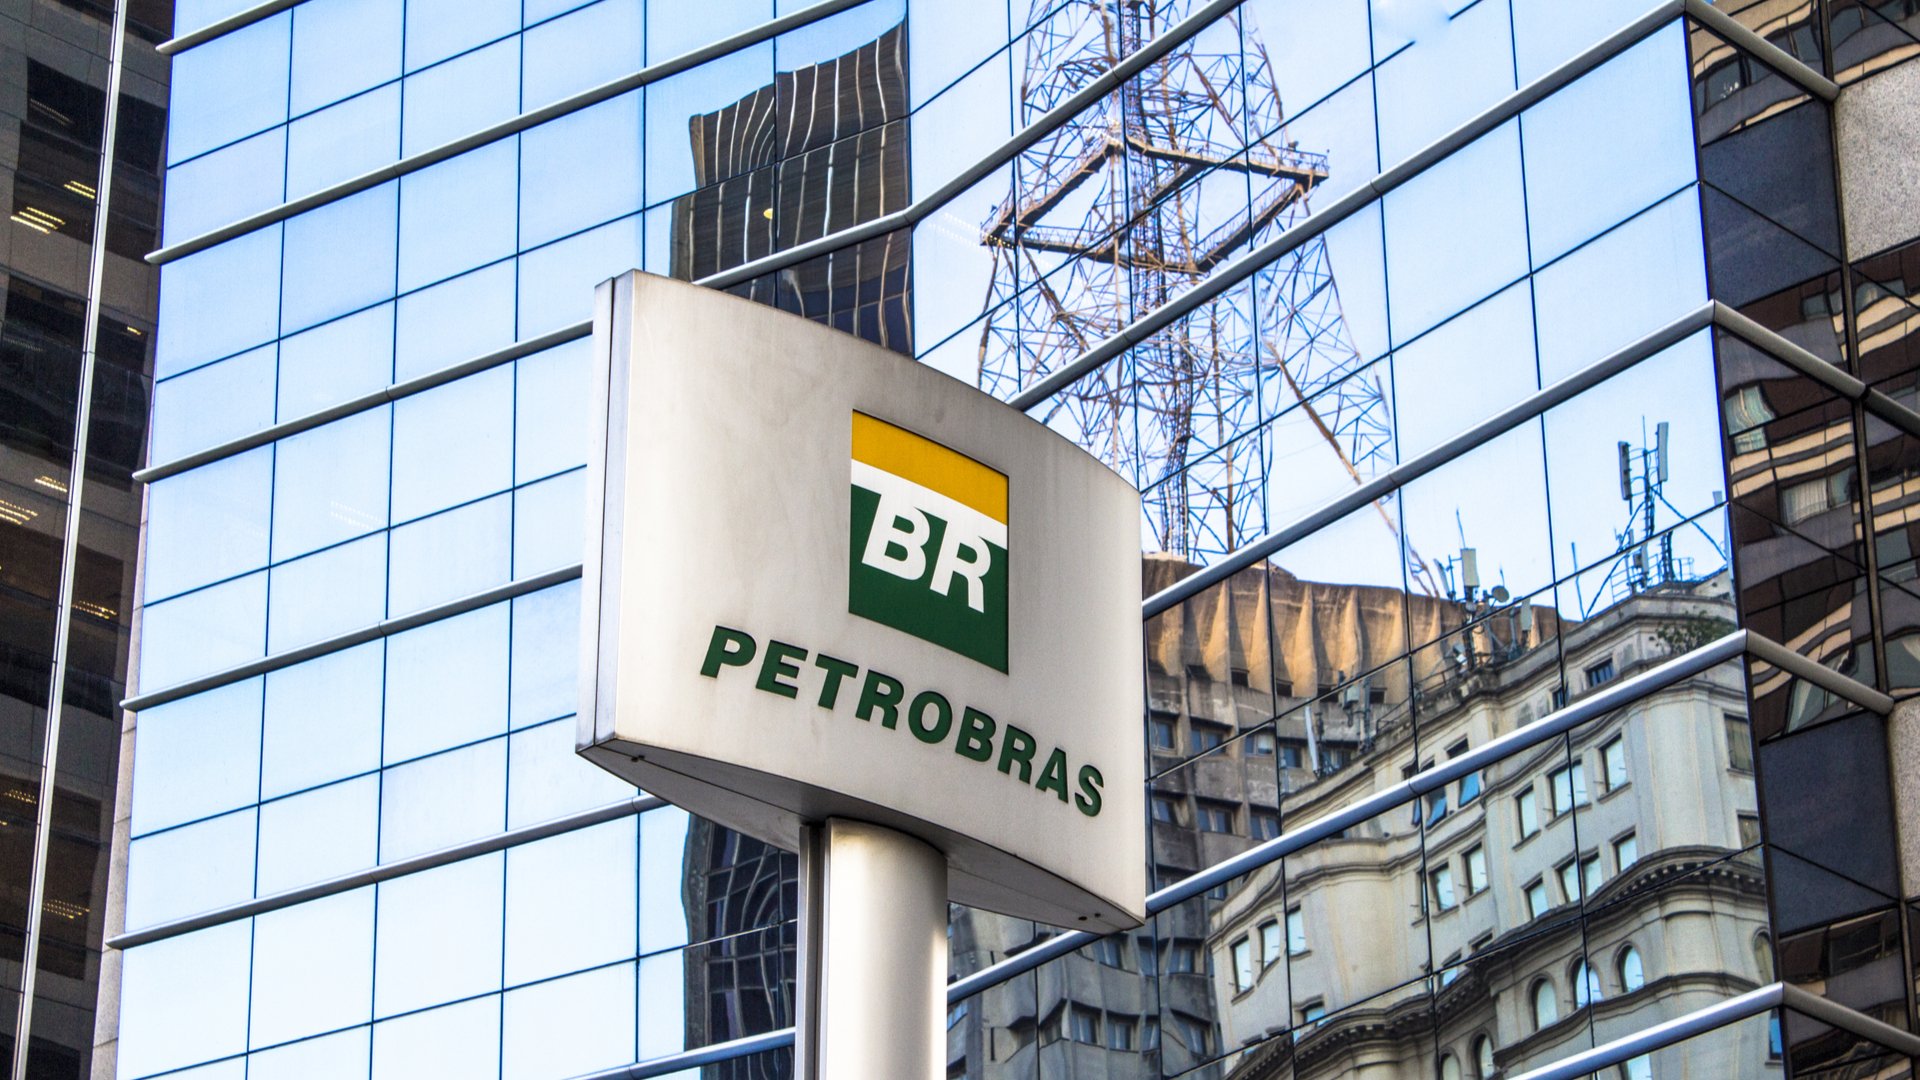 Passou, mas não foi unânime: indicado para comandar a Petrobras (PETR4) é aprovado por comitê — confira a próxima etapa